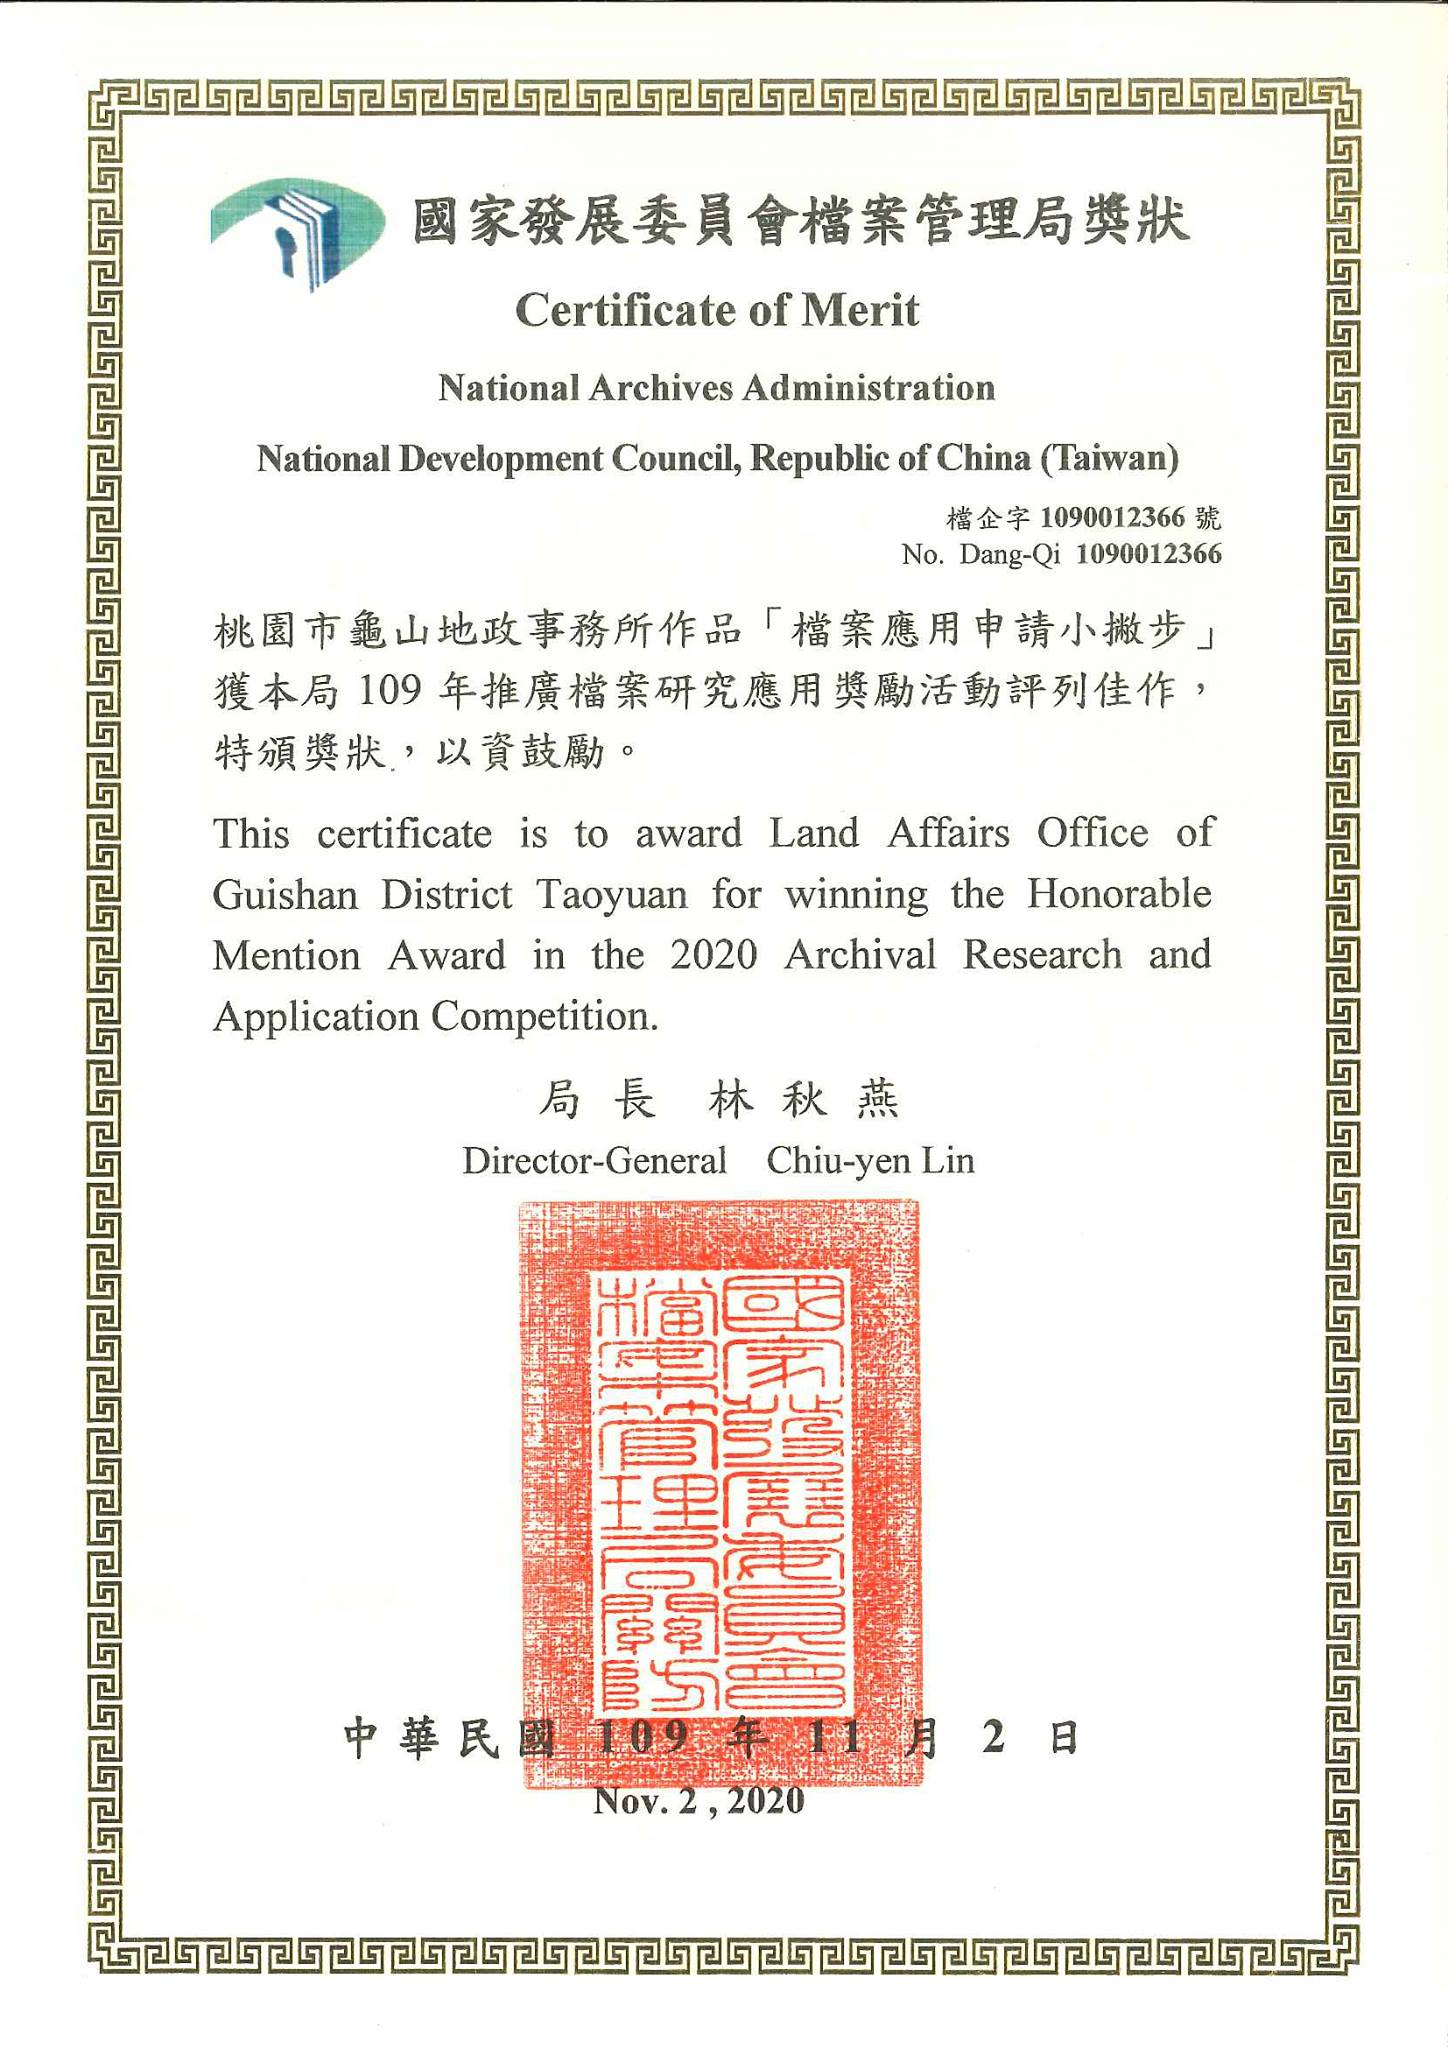 榮獲國家發展委員會檔案管理局109年推廣檔案研究應用獎勵活動評列 佳作-2